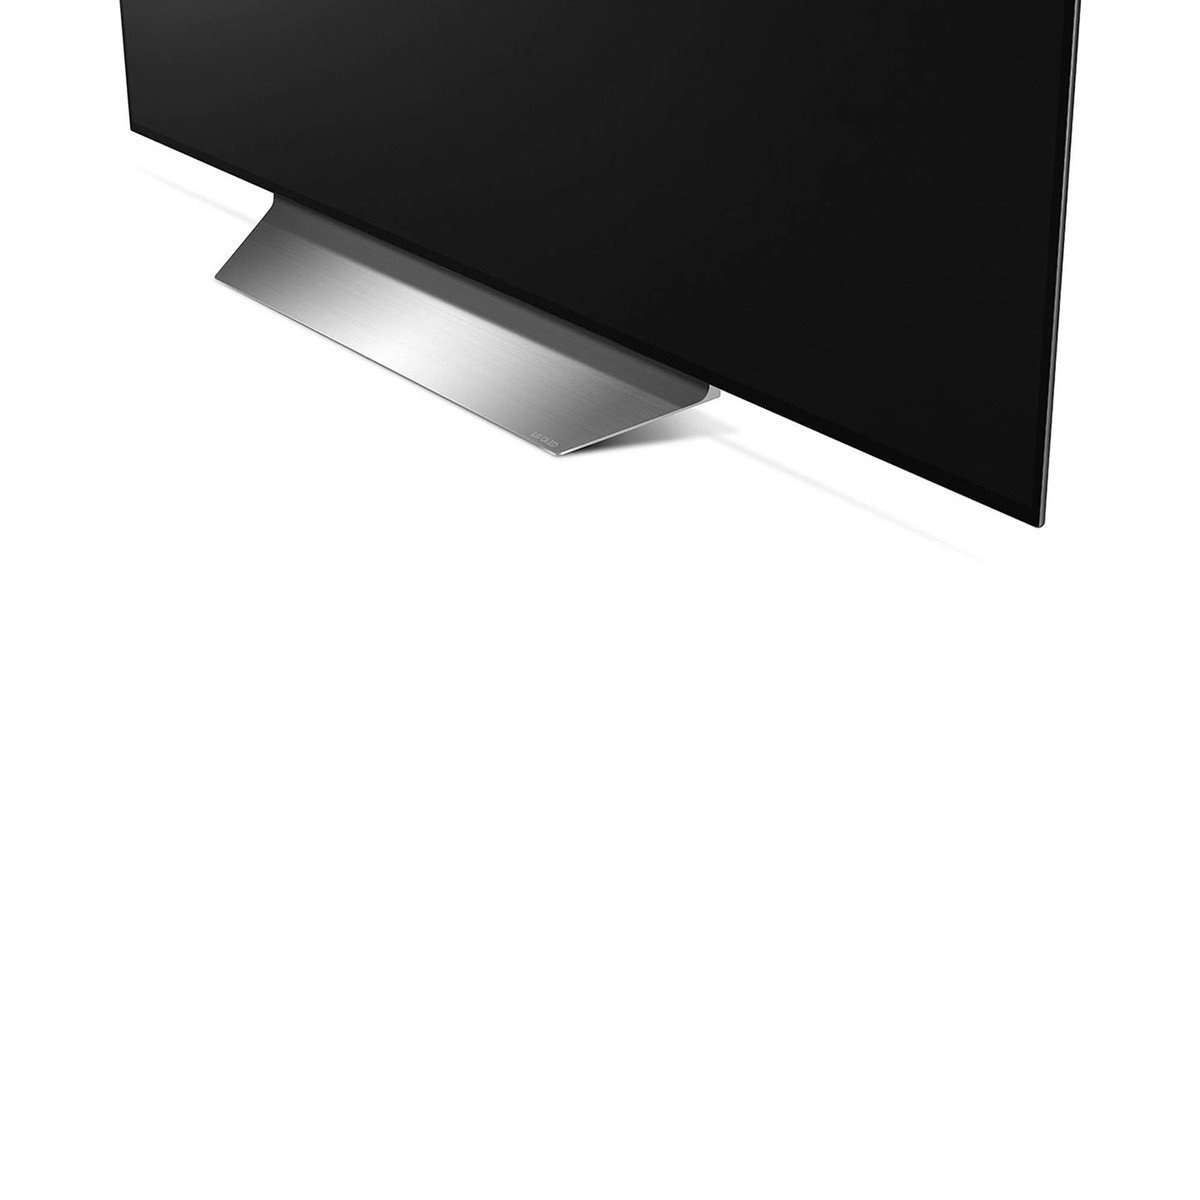 إل جي شاشة تلفزيون 4 كيه ذكية عالية الدقة أوو إل إي دي 77 بوصة OLED77C9PVB